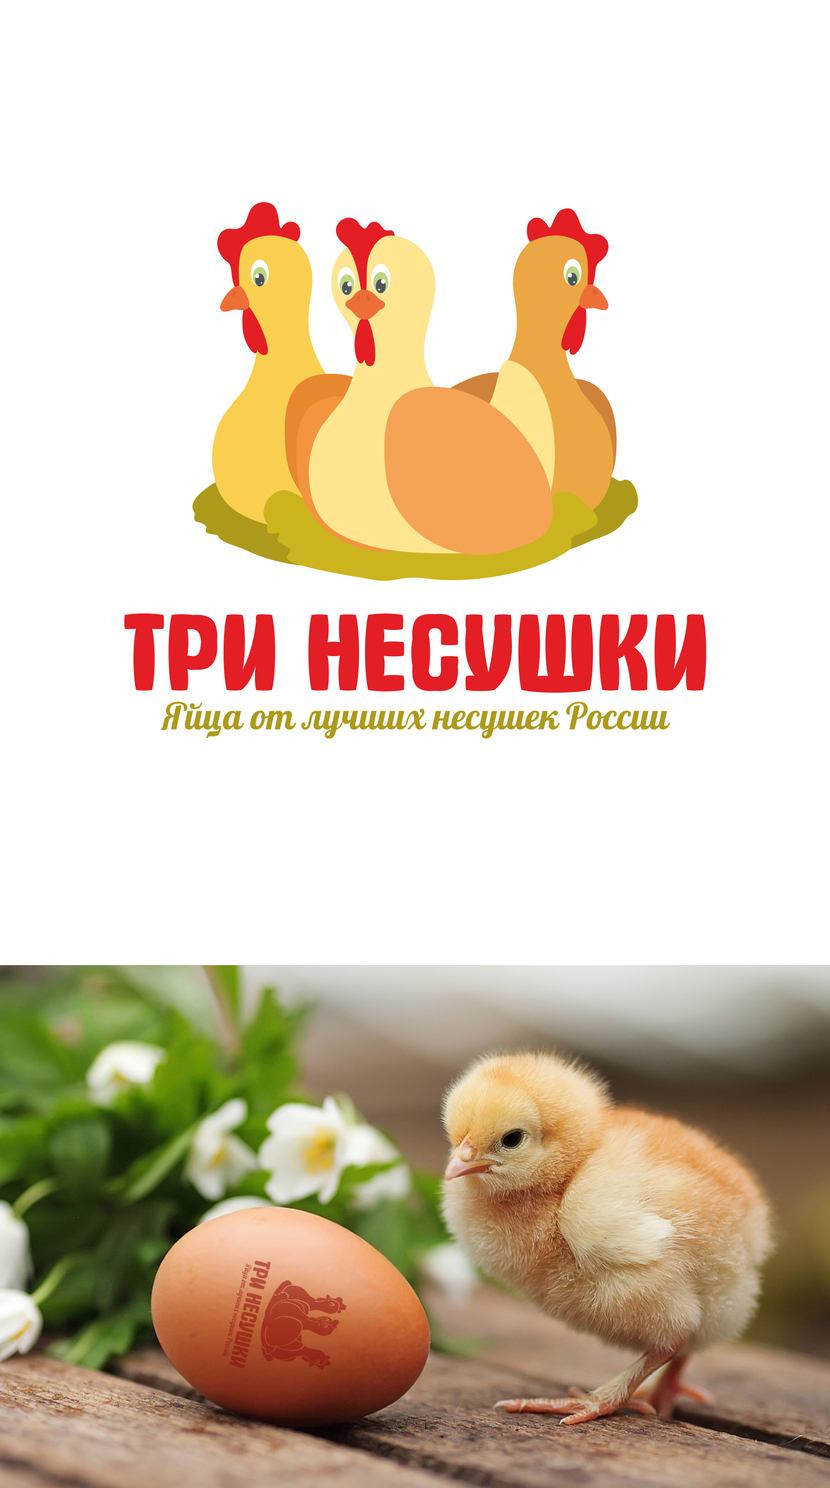 ++ - Разработка логотипа и фирменного стиля для нового бренда куриных яиц "Три несушки"